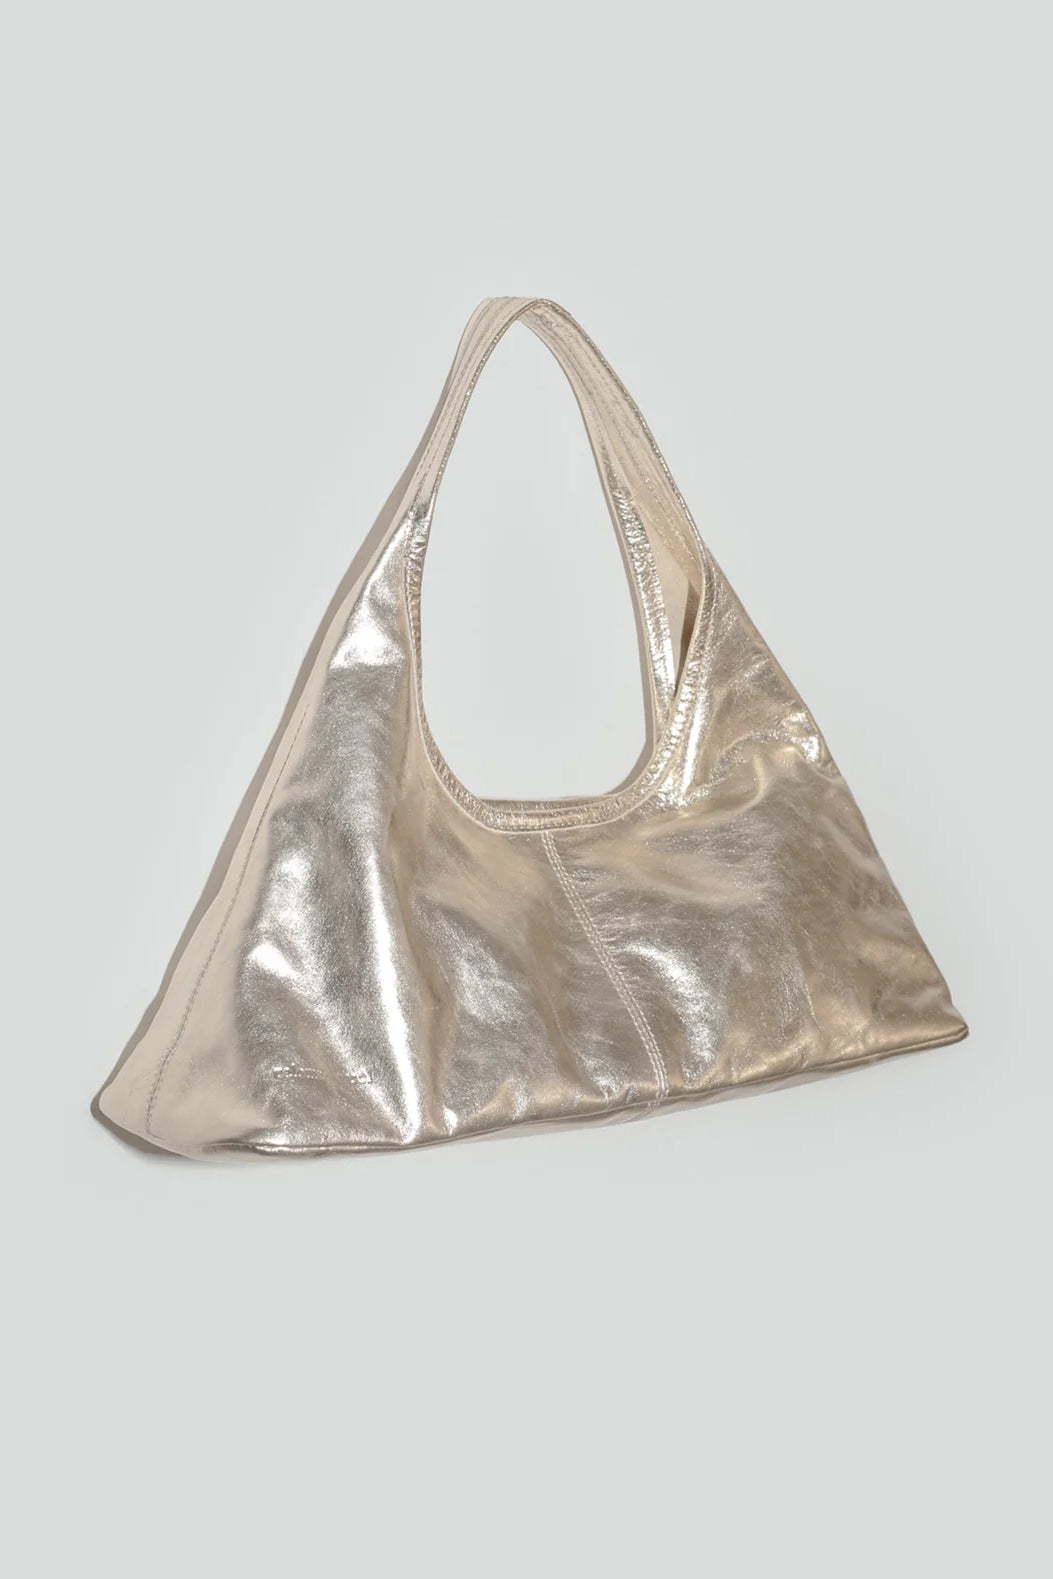 Paloma Wool Querida Bag // Gold